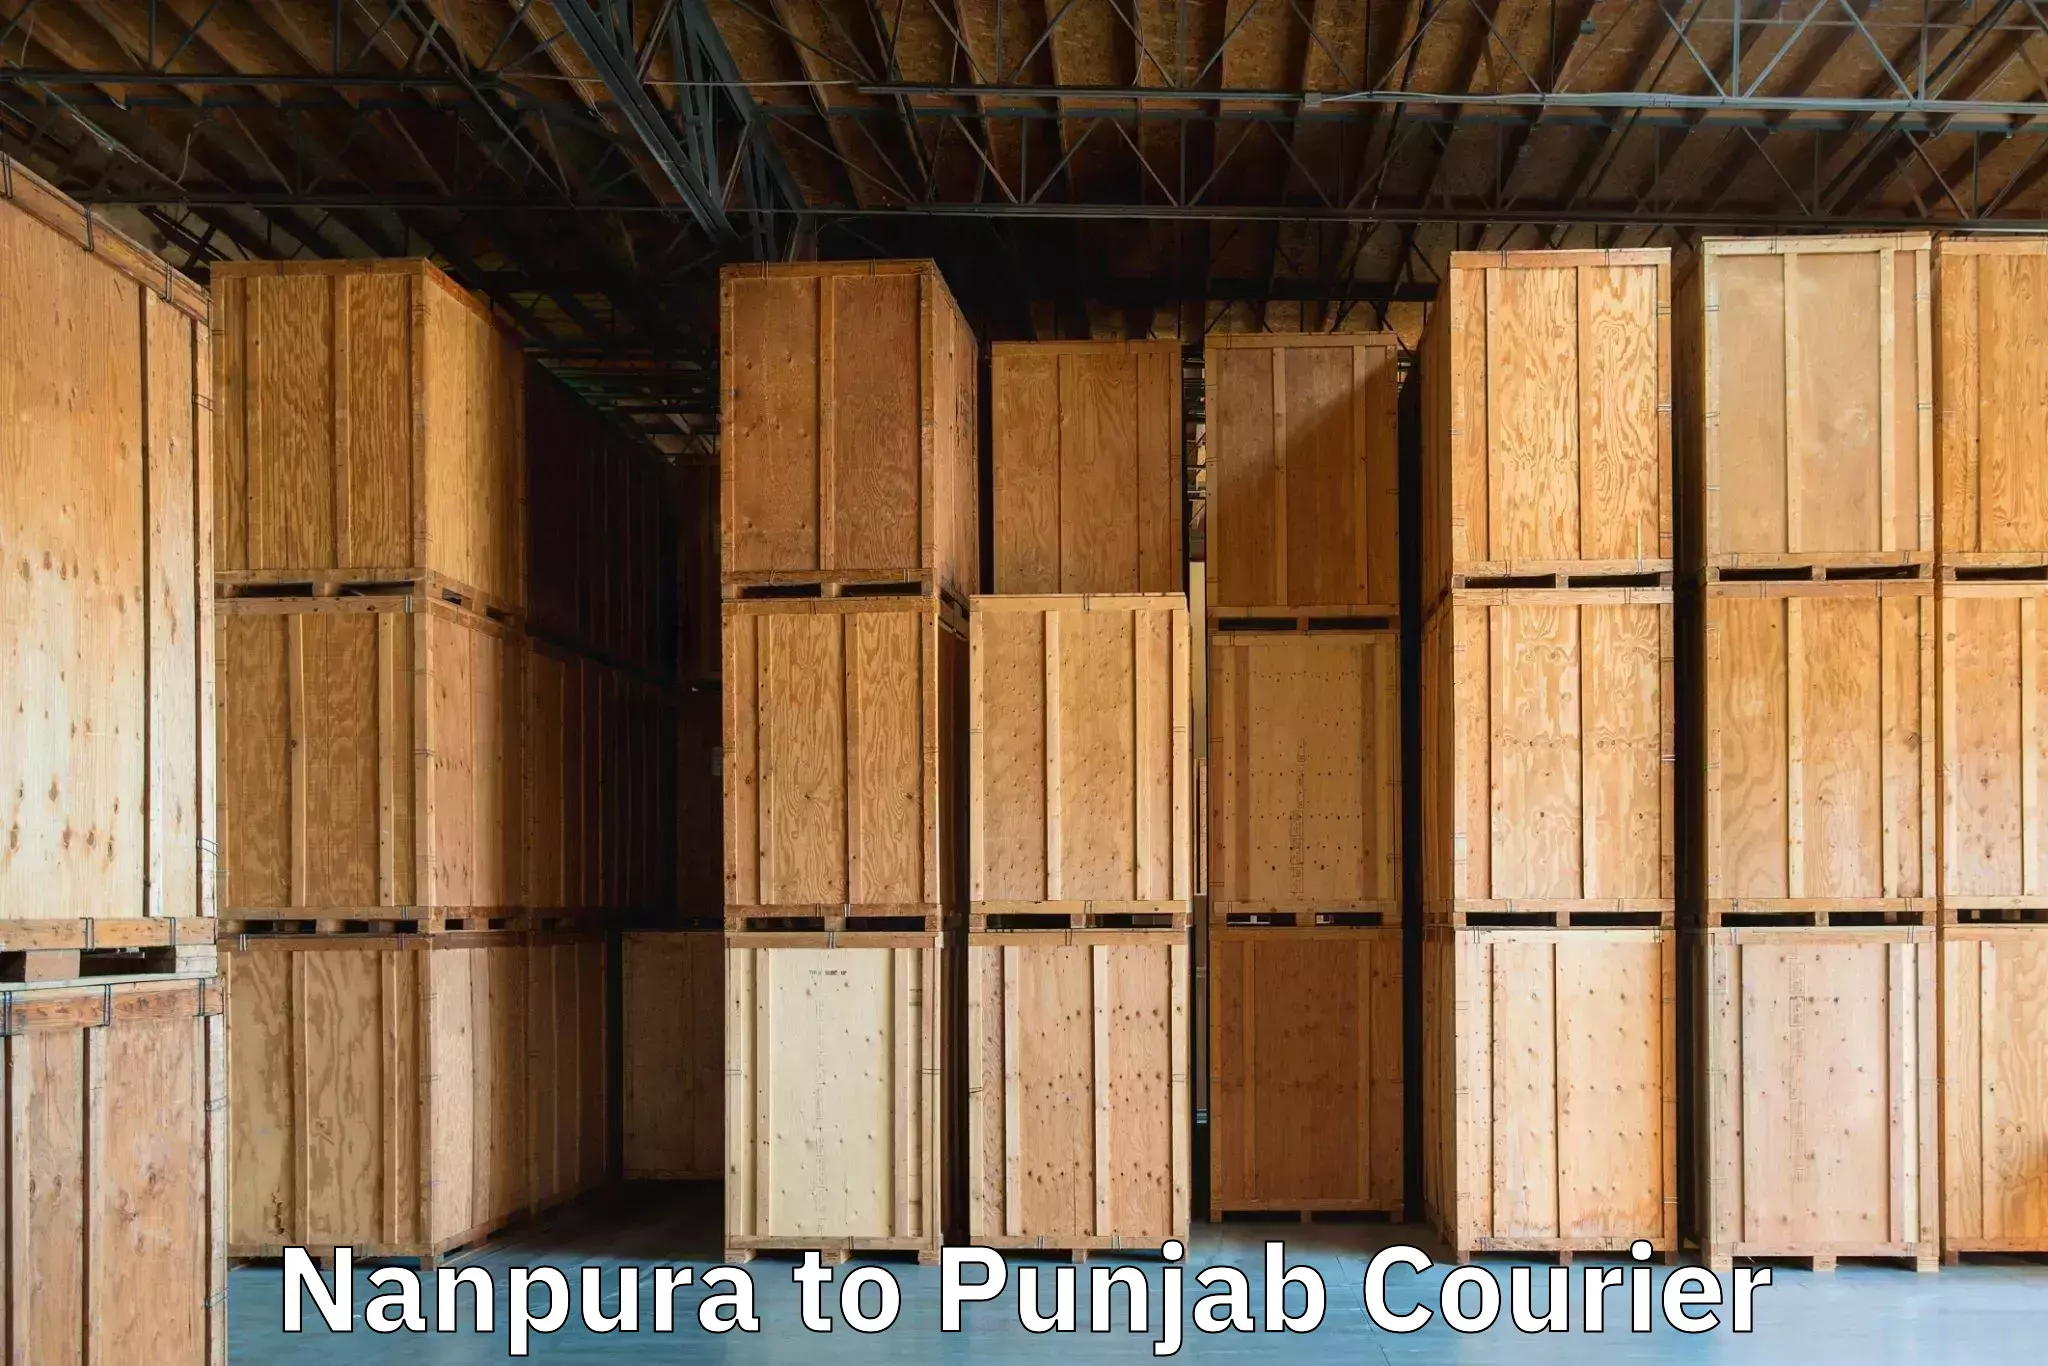 Luggage shipment strategy Nanpura to Central University of Punjab Bathinda